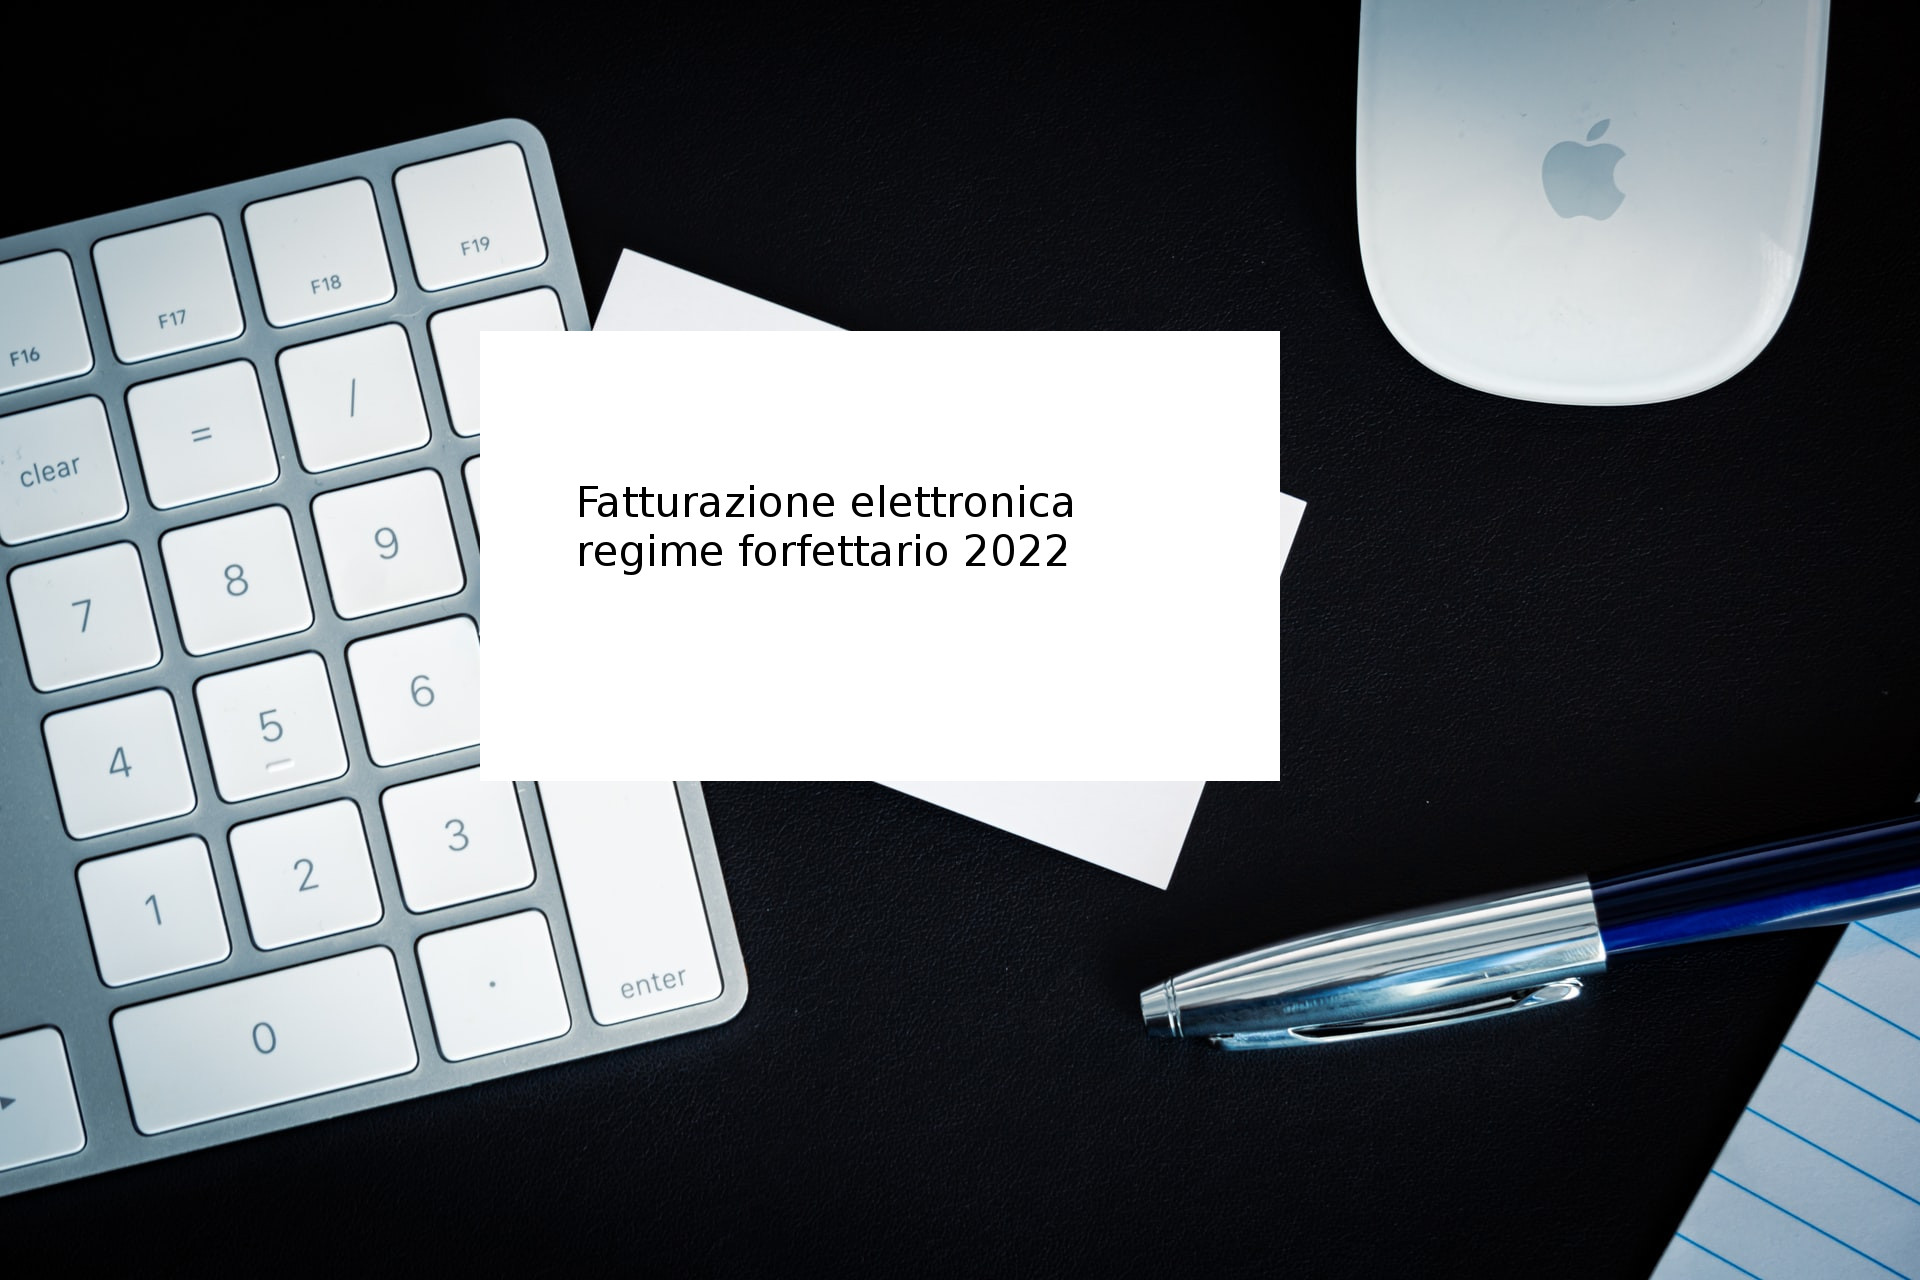 Fatturazione elettronica obbligatoria per chi è a regime forfettario dal 1 luglio 2022